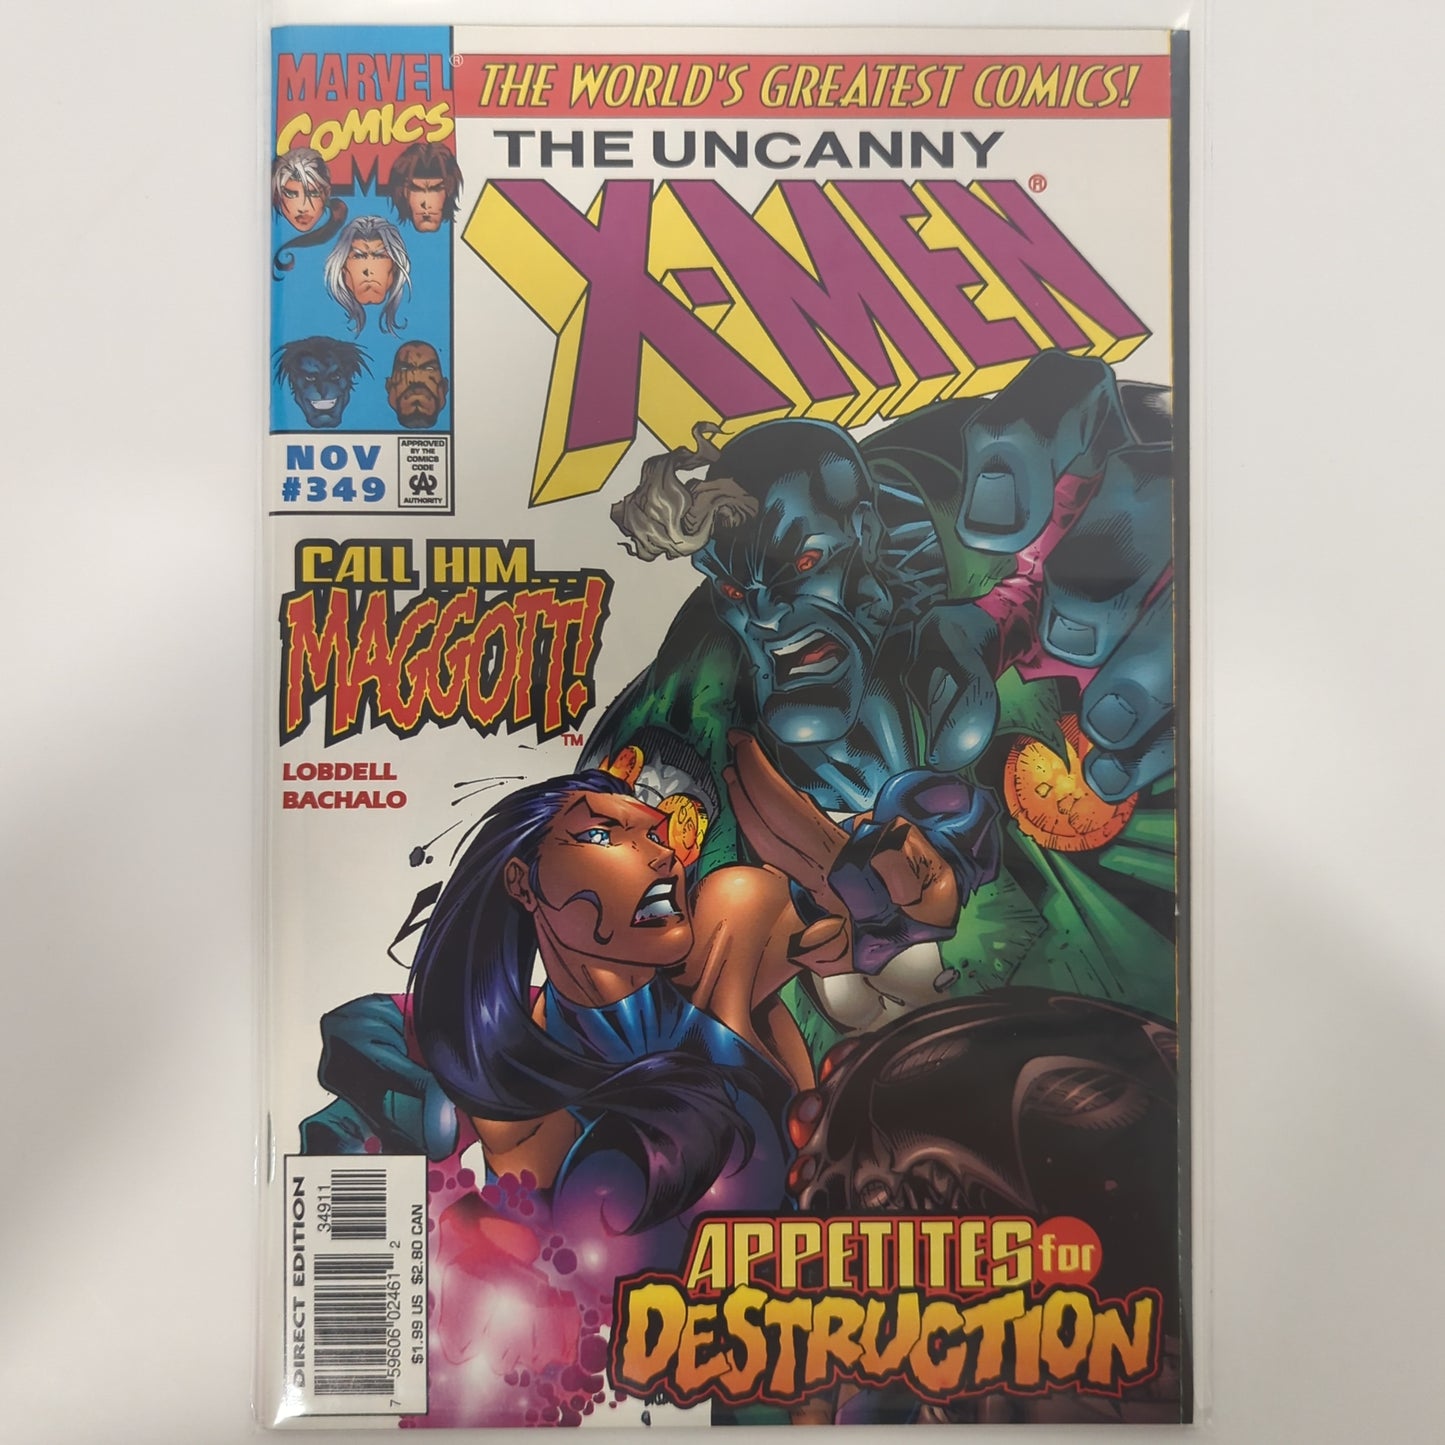 The Uncanny X-Men #349